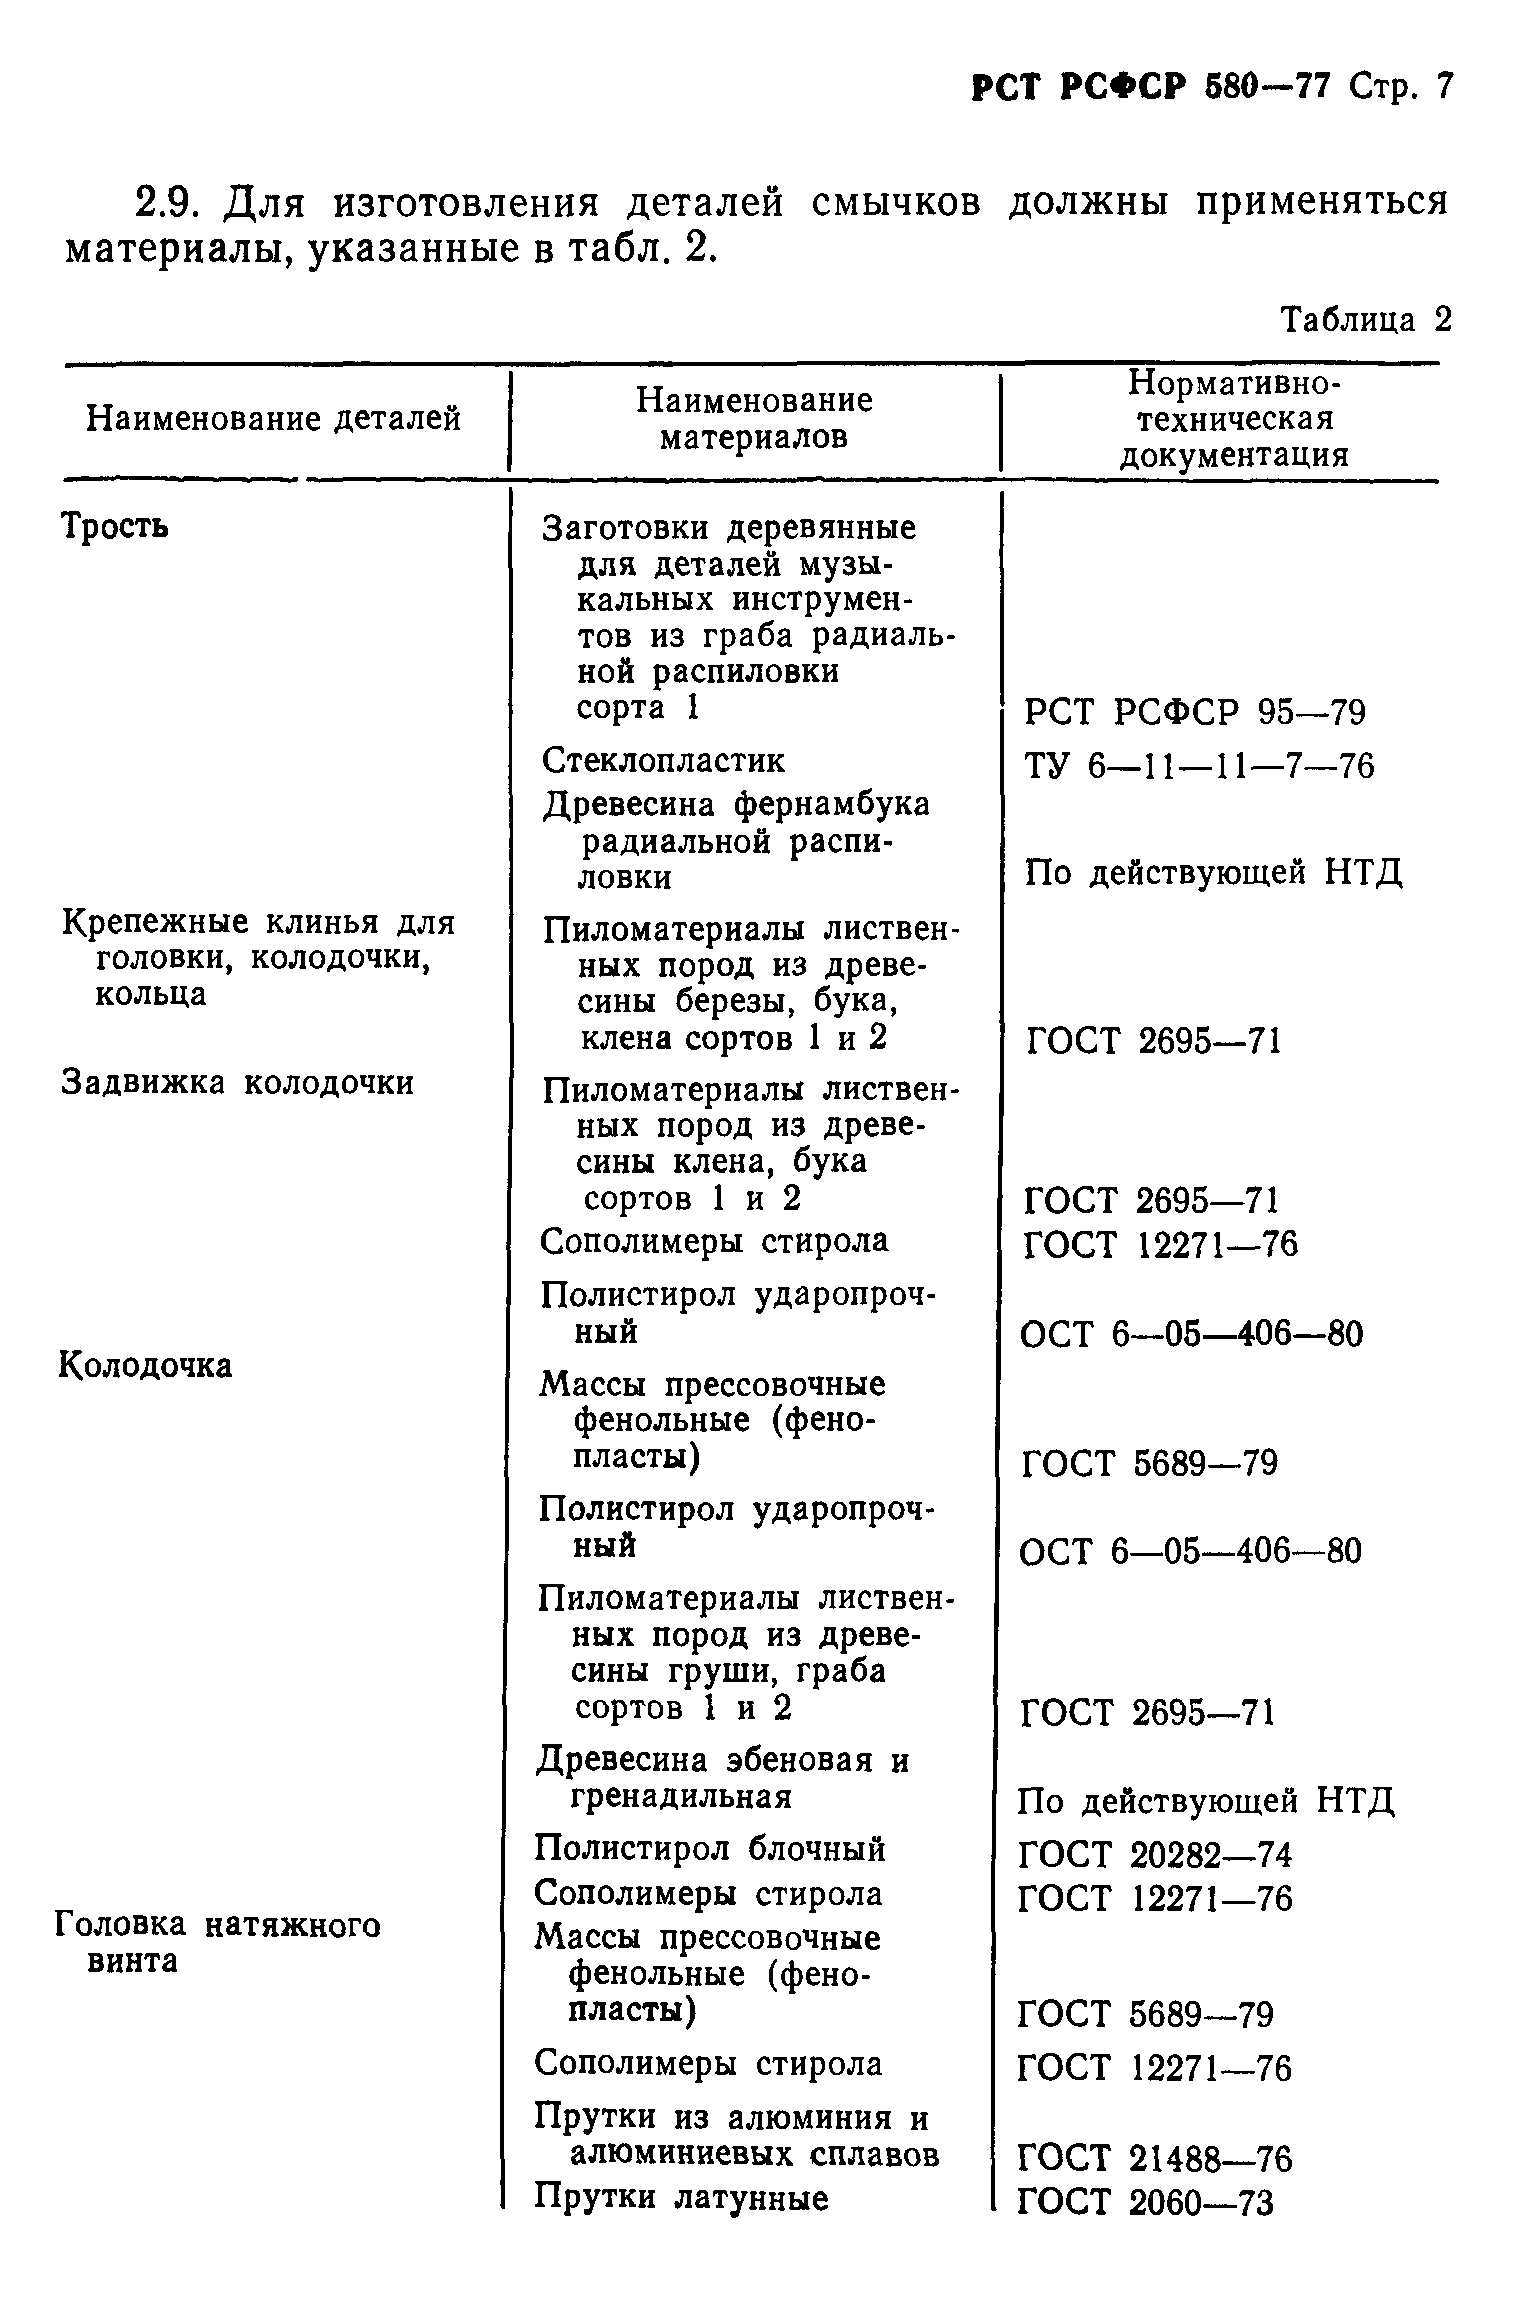 РСТ РСФСР 580-77